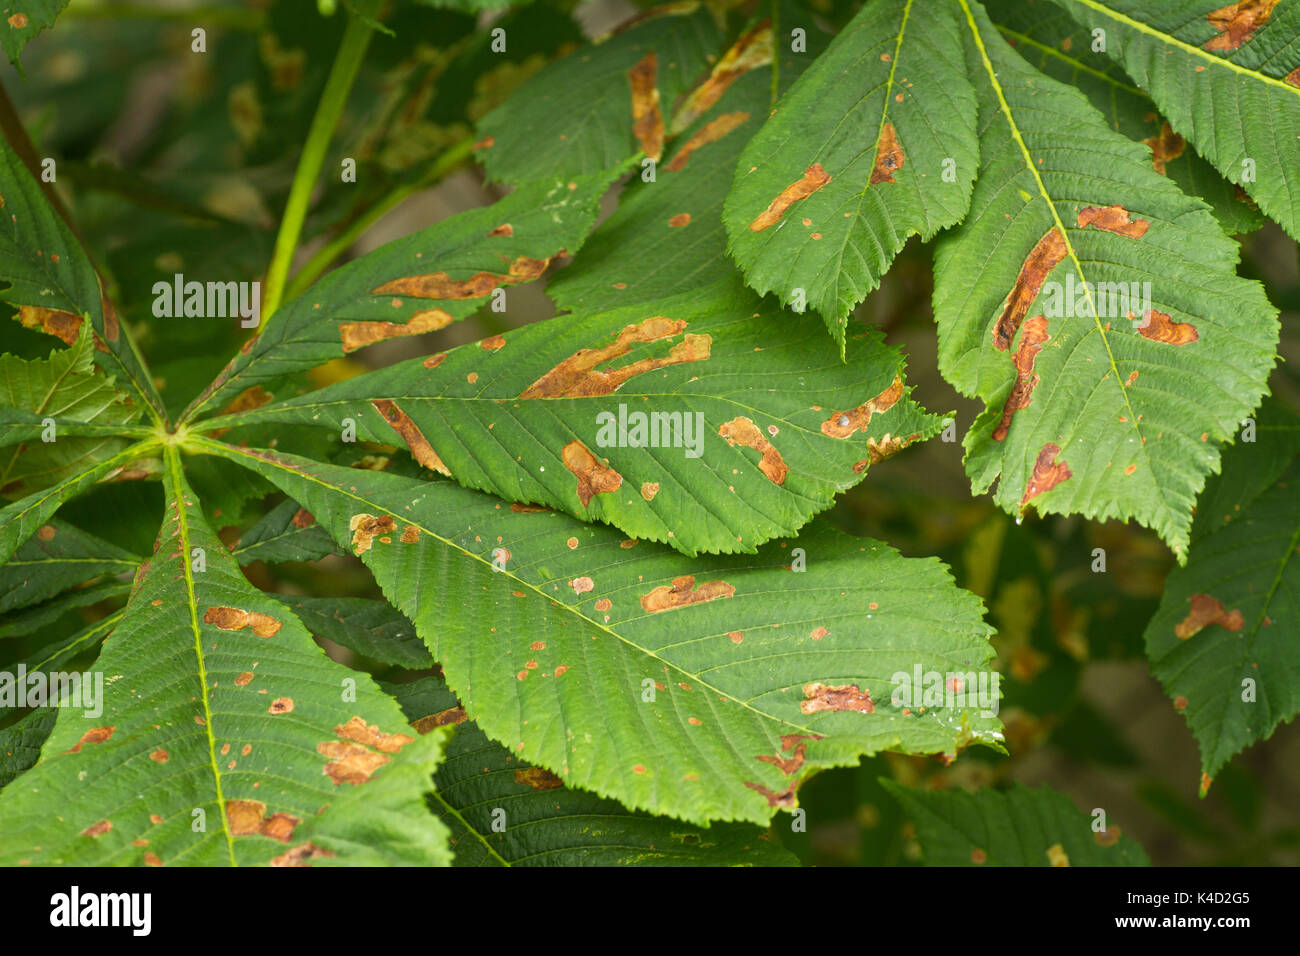 Horse Chestnut Leaf miner (Cameraria ohridella) larvae and mines in Horse Chestnut leaf Stock Photo